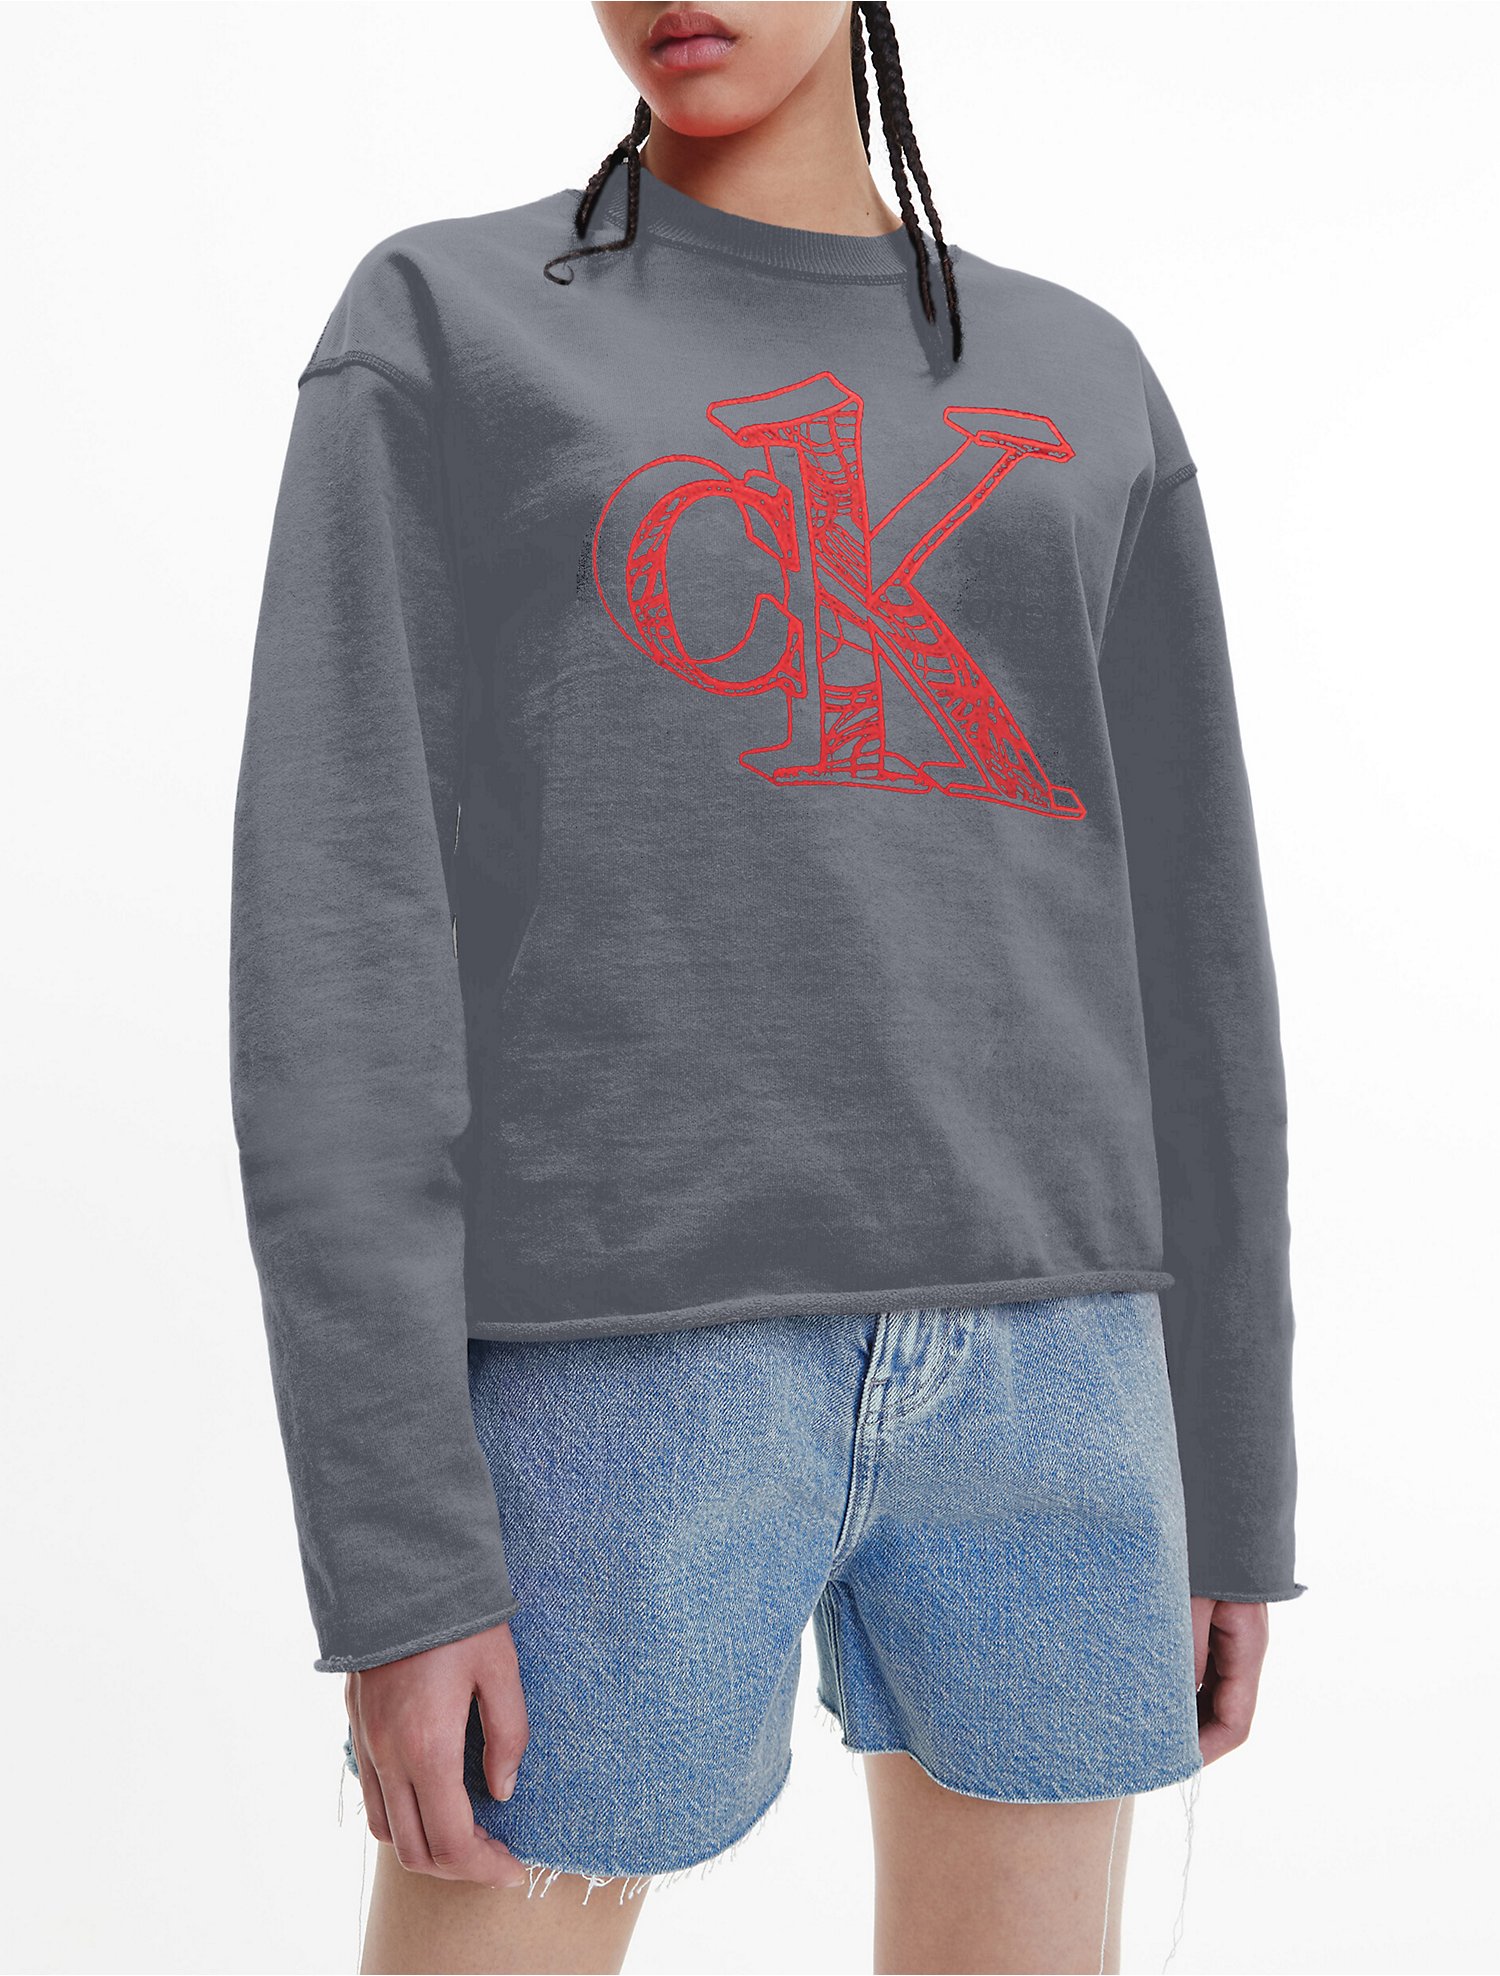 Aas Afstudeeralbum Ik heb een Engelse les CK One Gender Inclusive Oversized Garment-Dyed Sweatshirt | Calvin Klein